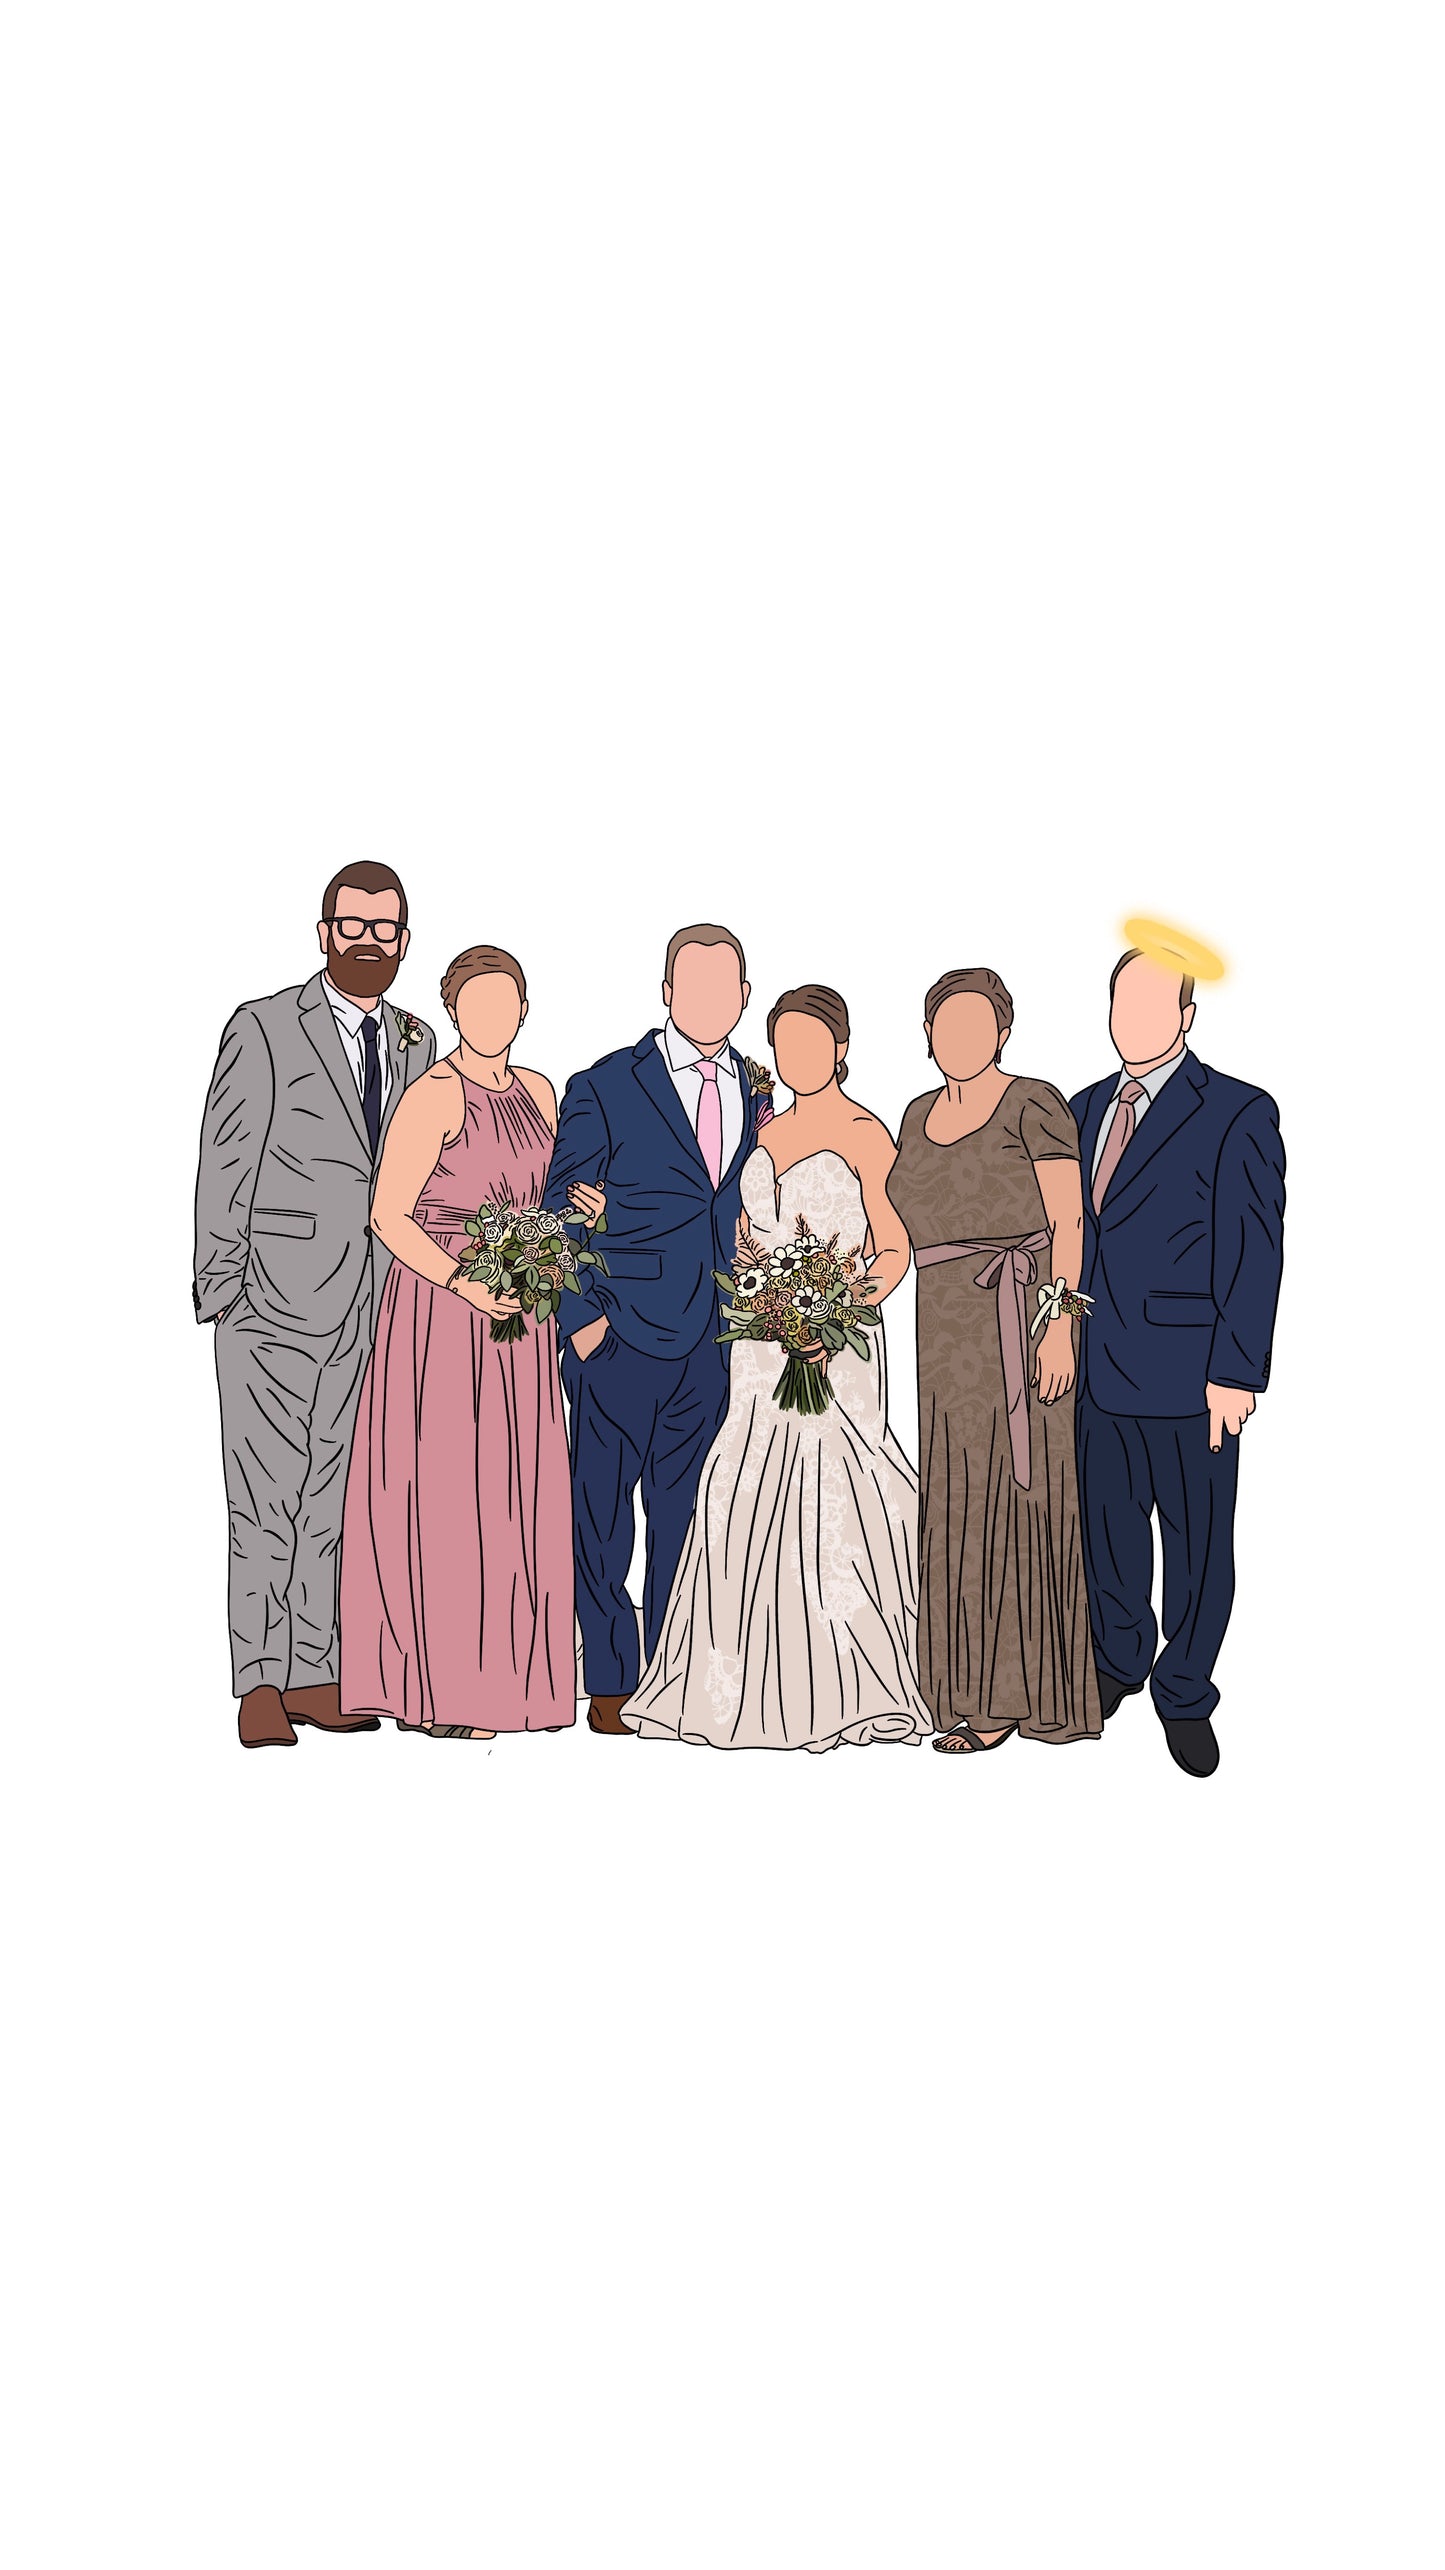 A Custom Wedding Memorial Illustration